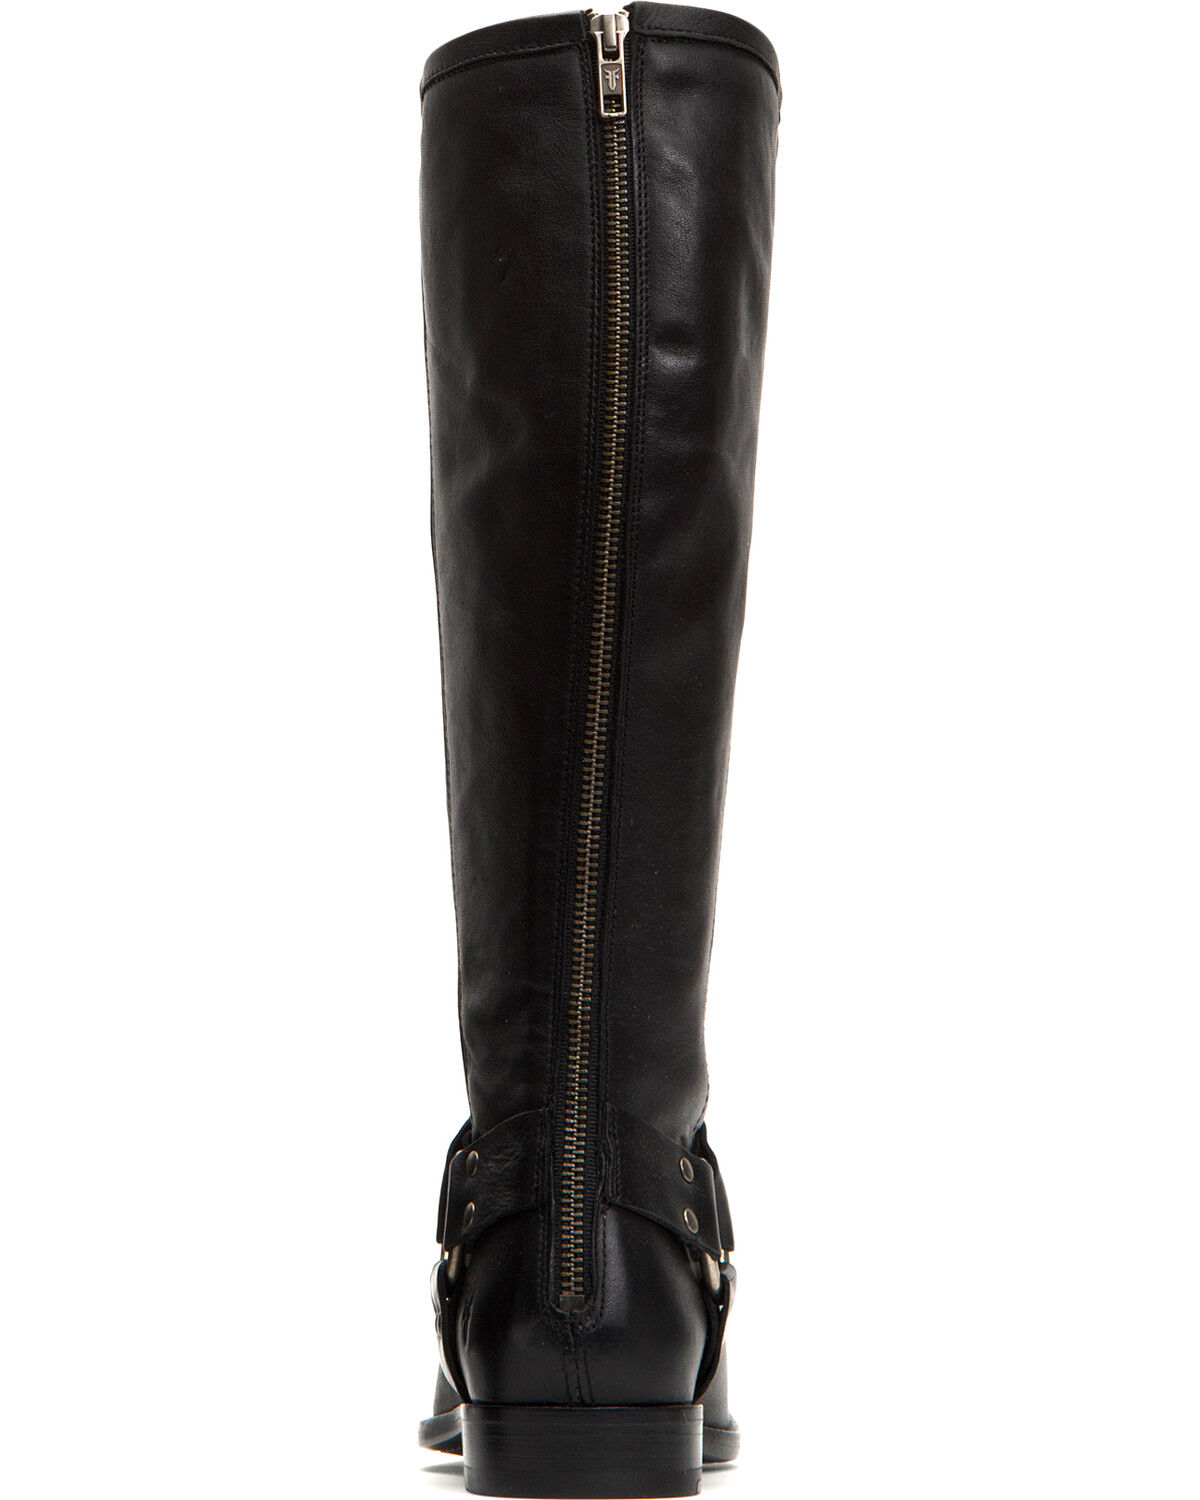 frye women's tall boots